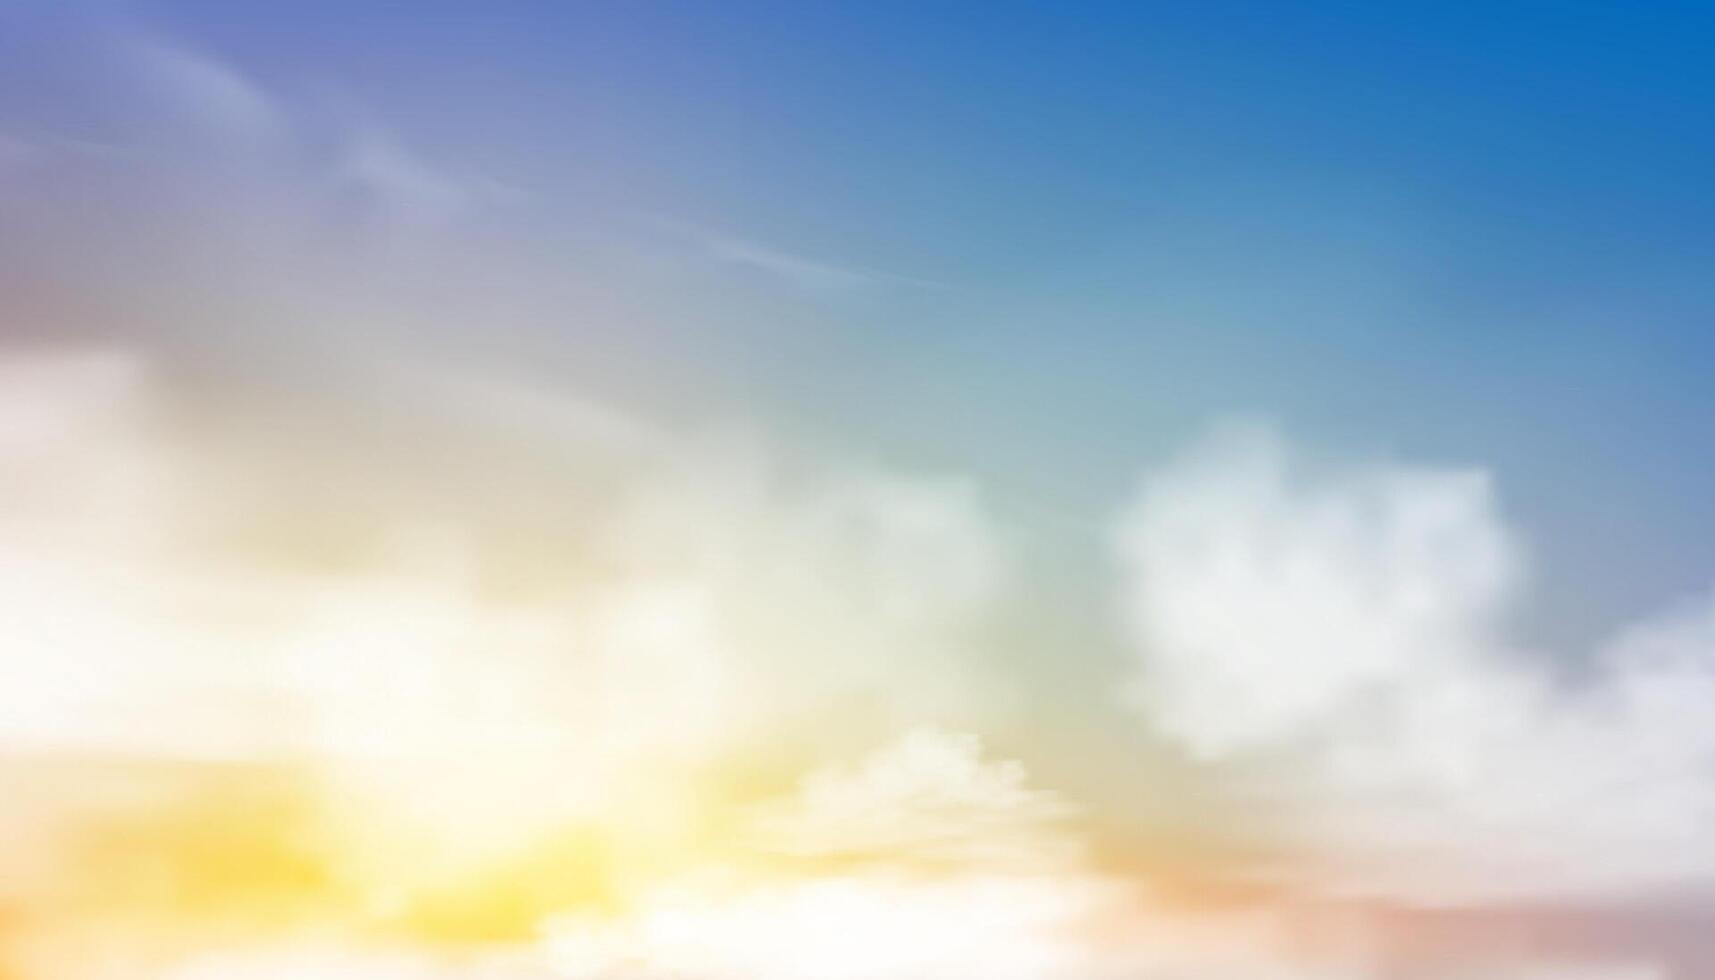 lucht achtergrond, roze kleur abstract pluizig wolk, tekenfilm ochtend- zomer lucht pastel blauw, geel, fantasie dramatisch zacht oranje zonsondergang in herfst, vector illustratie fee mysticus vervagen zonsopkomst in winter